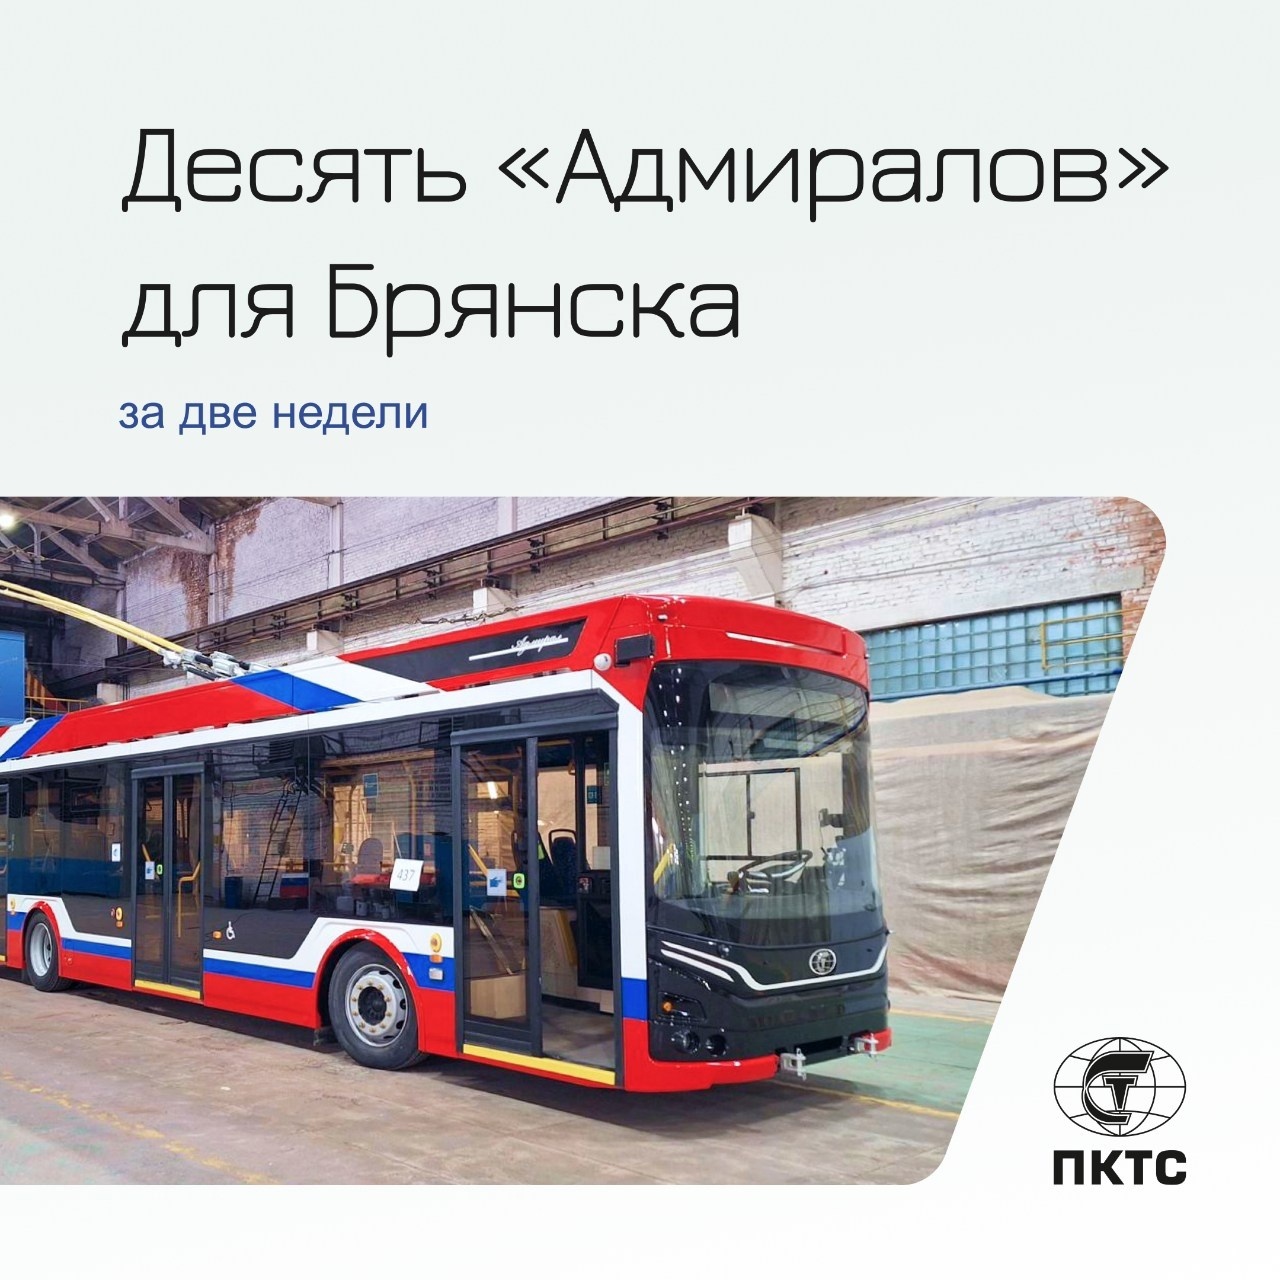 В Брянск до 1 декабря поступят 10  троллейбусов «Адмирал»